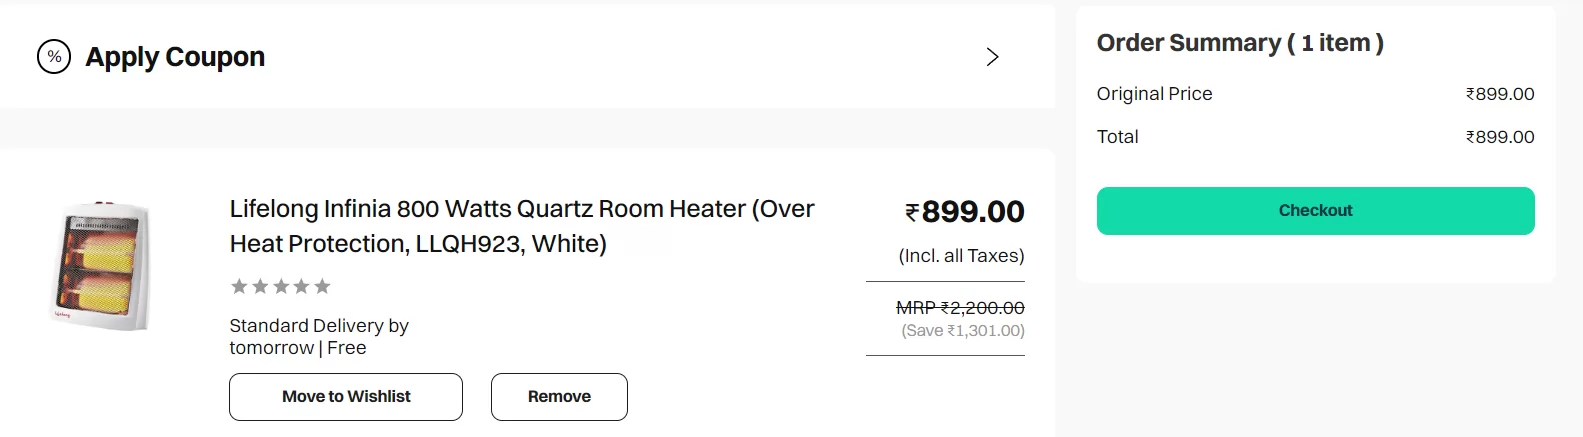 Buy Lifelong Infinia 800 Watts Quartz Room Heater (Over Heat